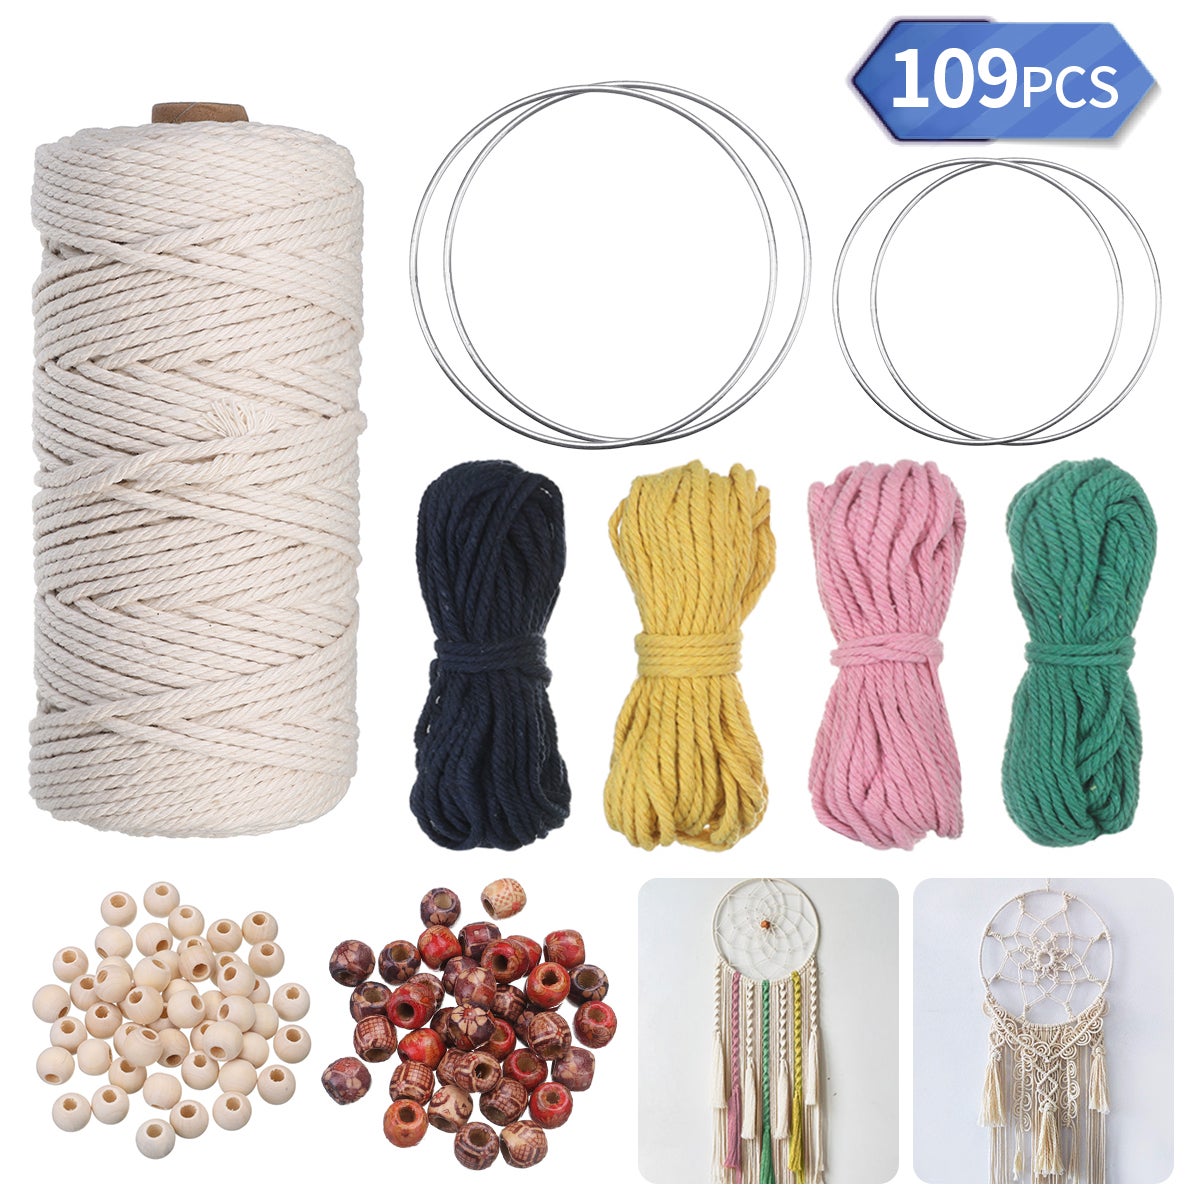 109 piezas de cuerda de algodón de macramé de 3 mm DIY, 4 rollos de cuerda  de algodón de colores, 4 anillos de hierro, 100 cuentas de madera